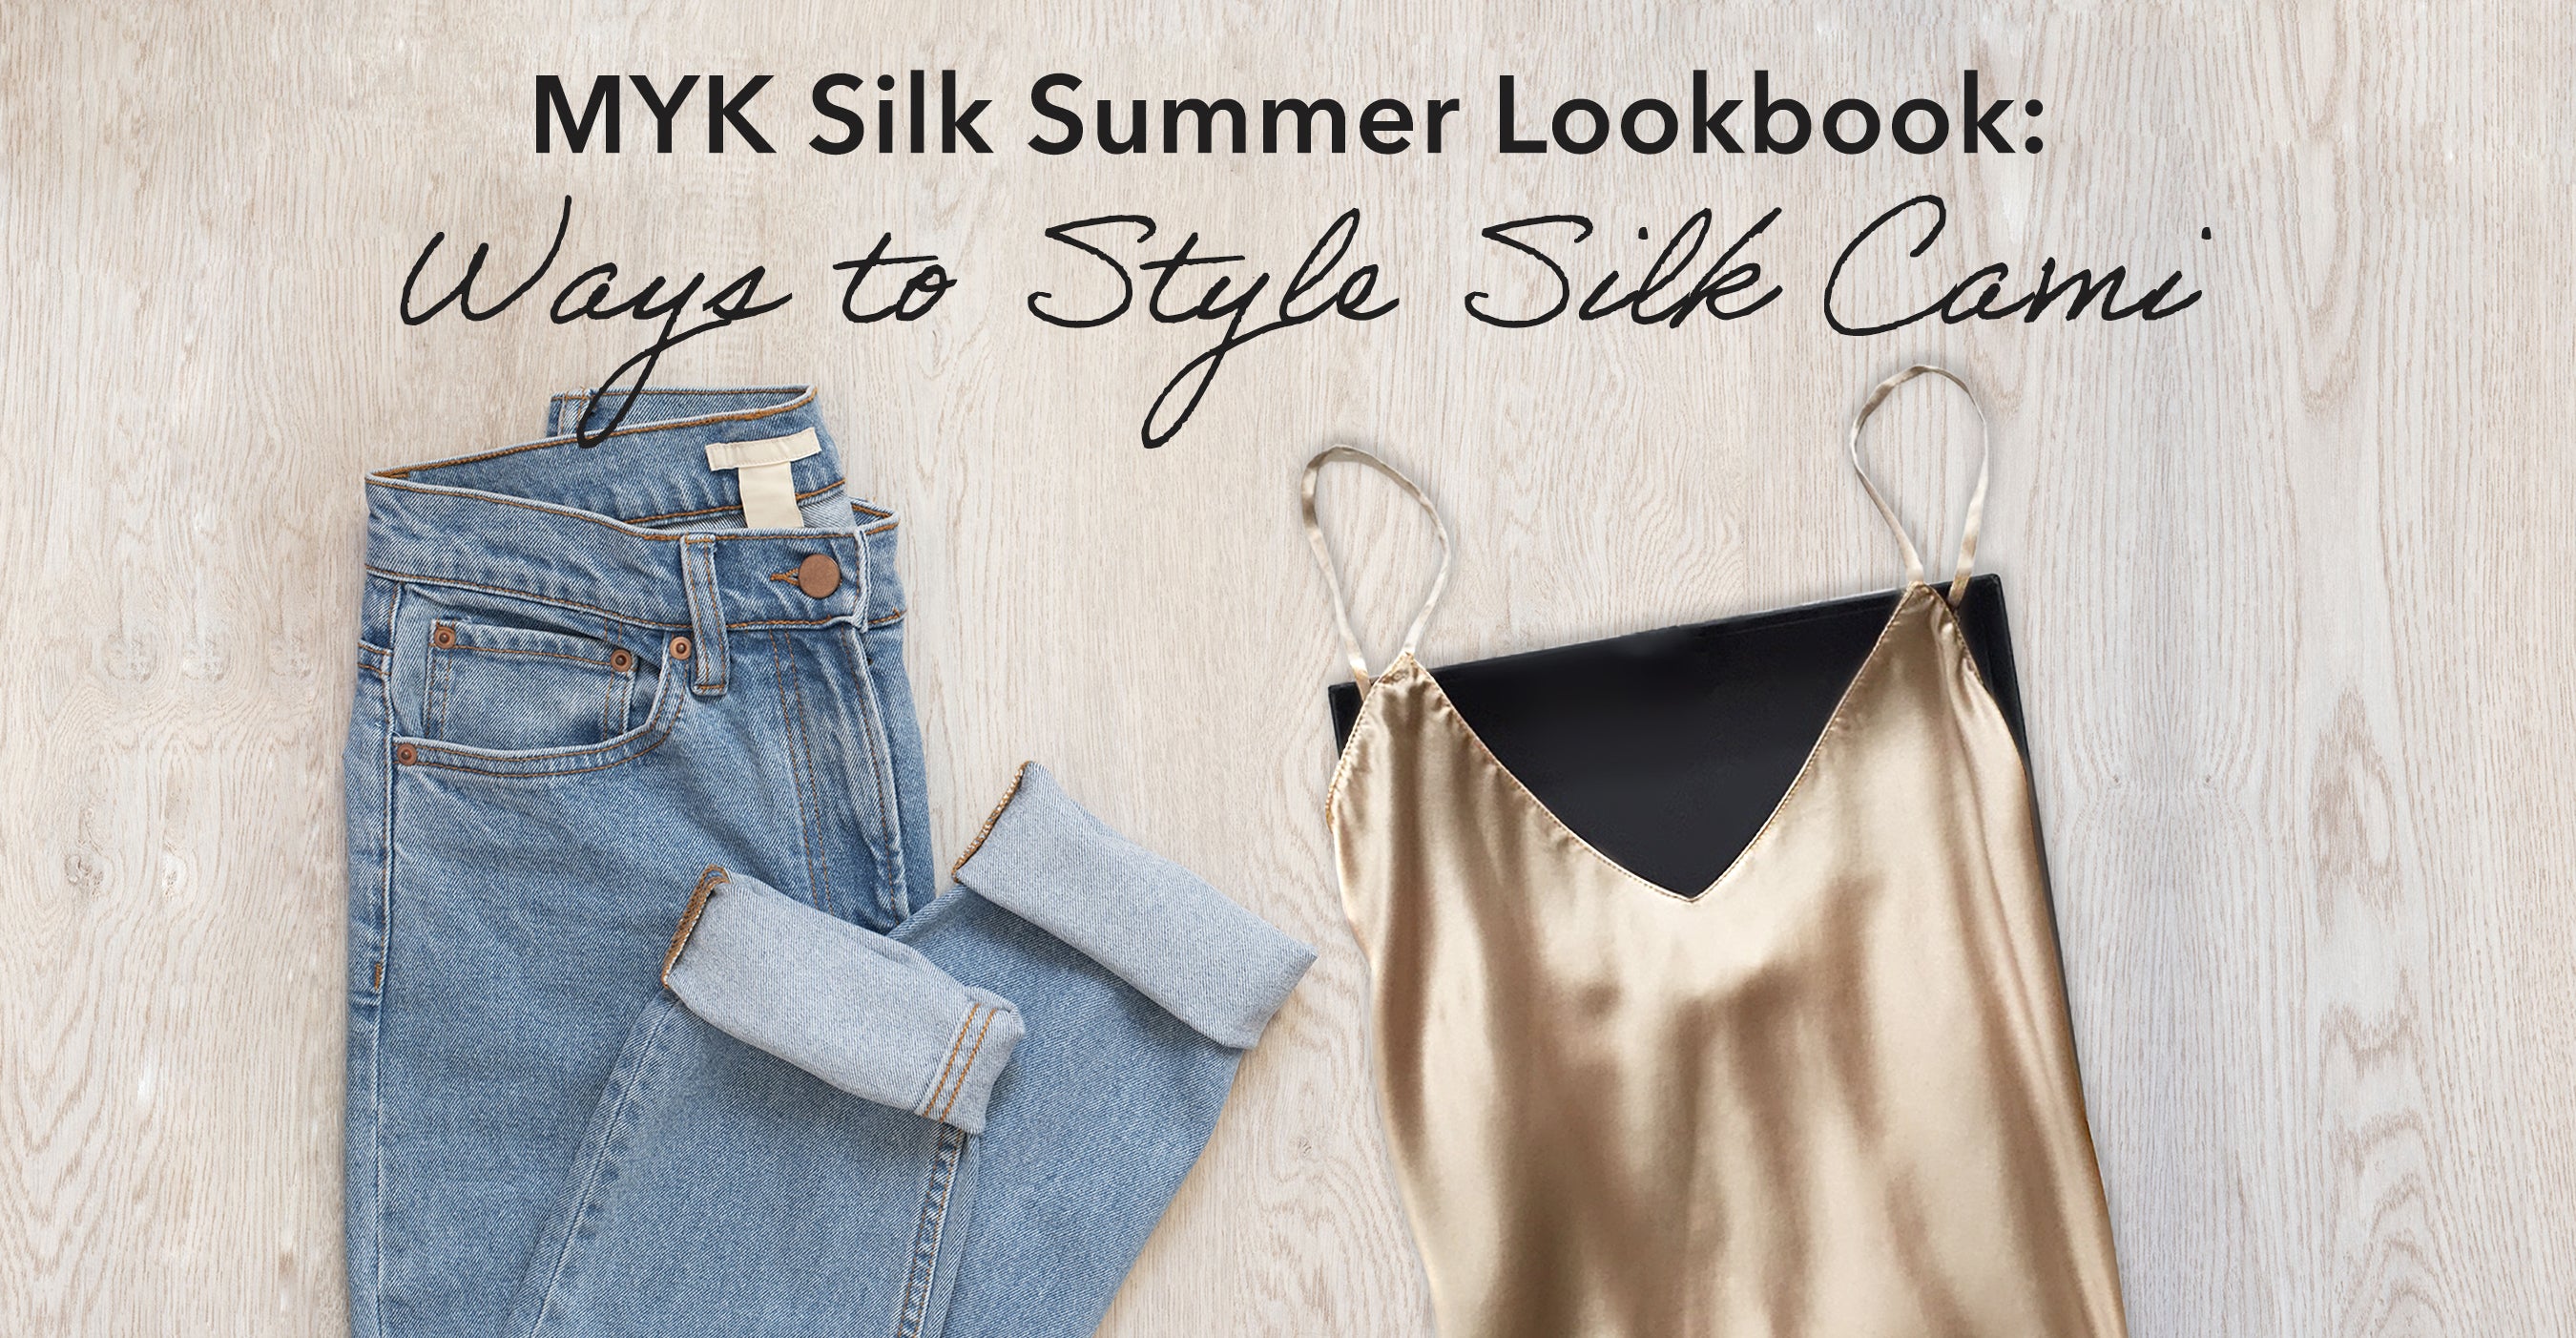 MYK Silk Summer Lookbook: Ways to Style Silk Camisole